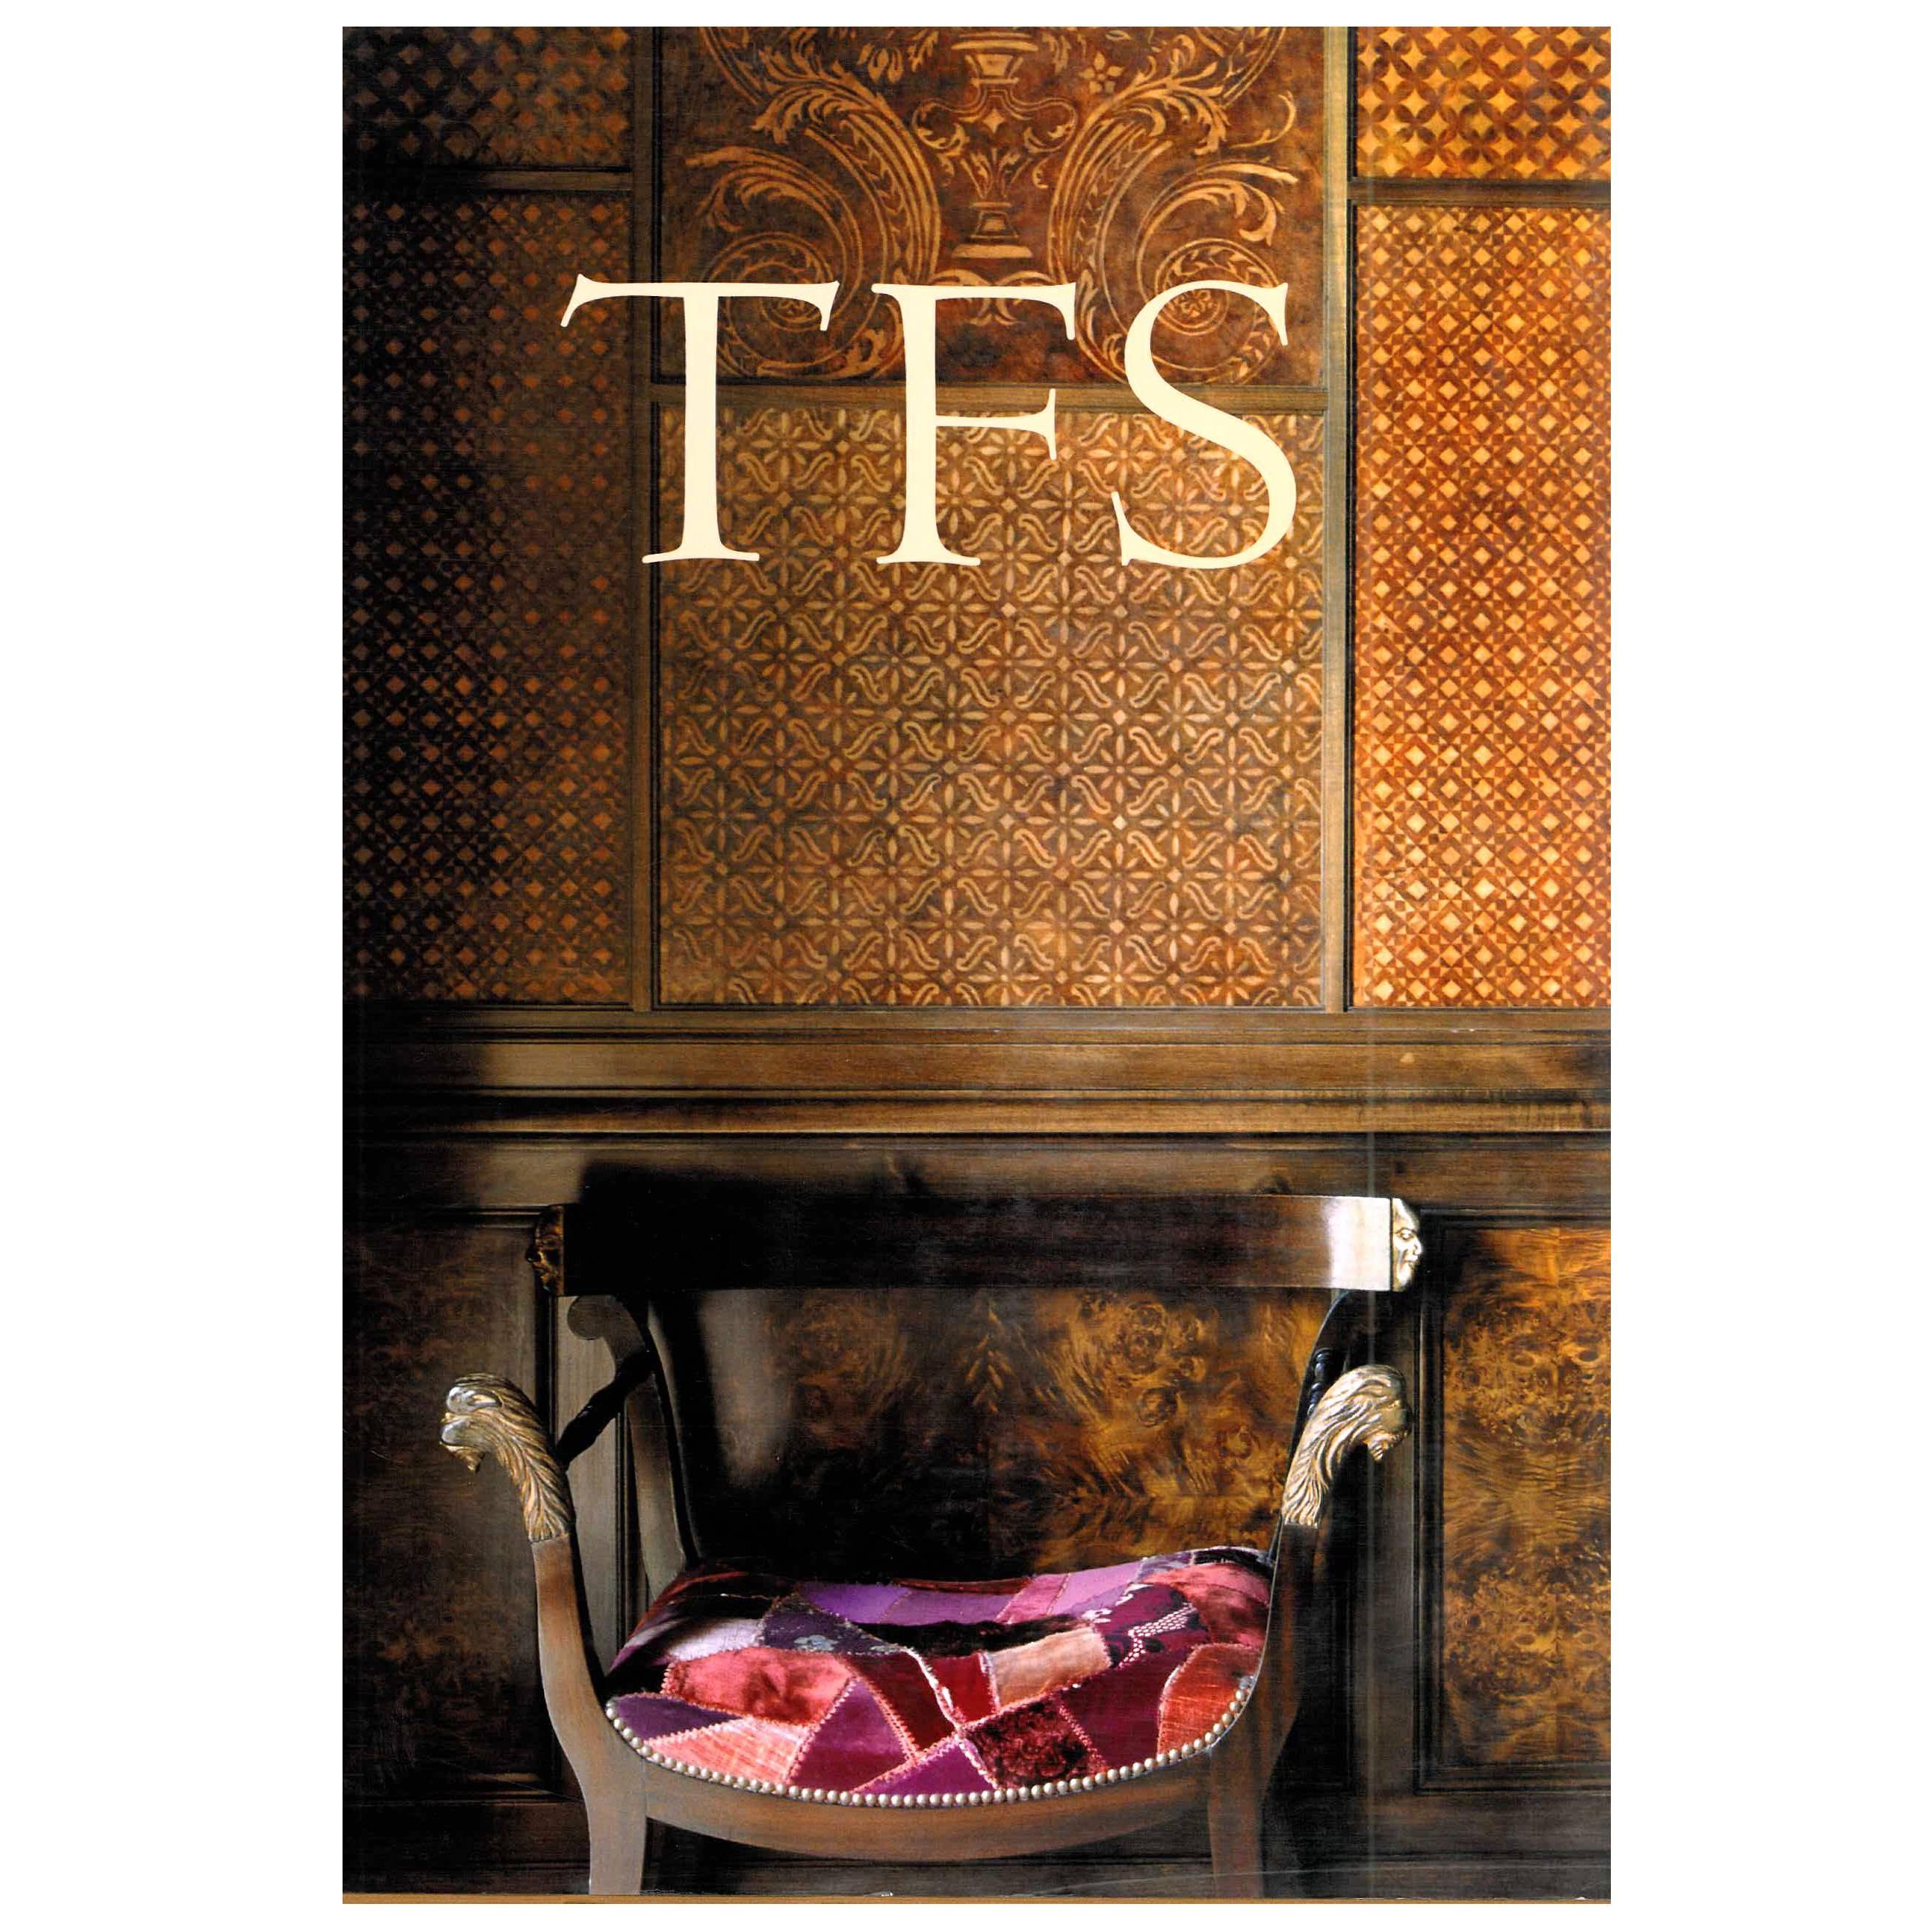 T F S: Toni Facella Sensi Architetto by G Baroni & C Cunaccia (Book) For Sale